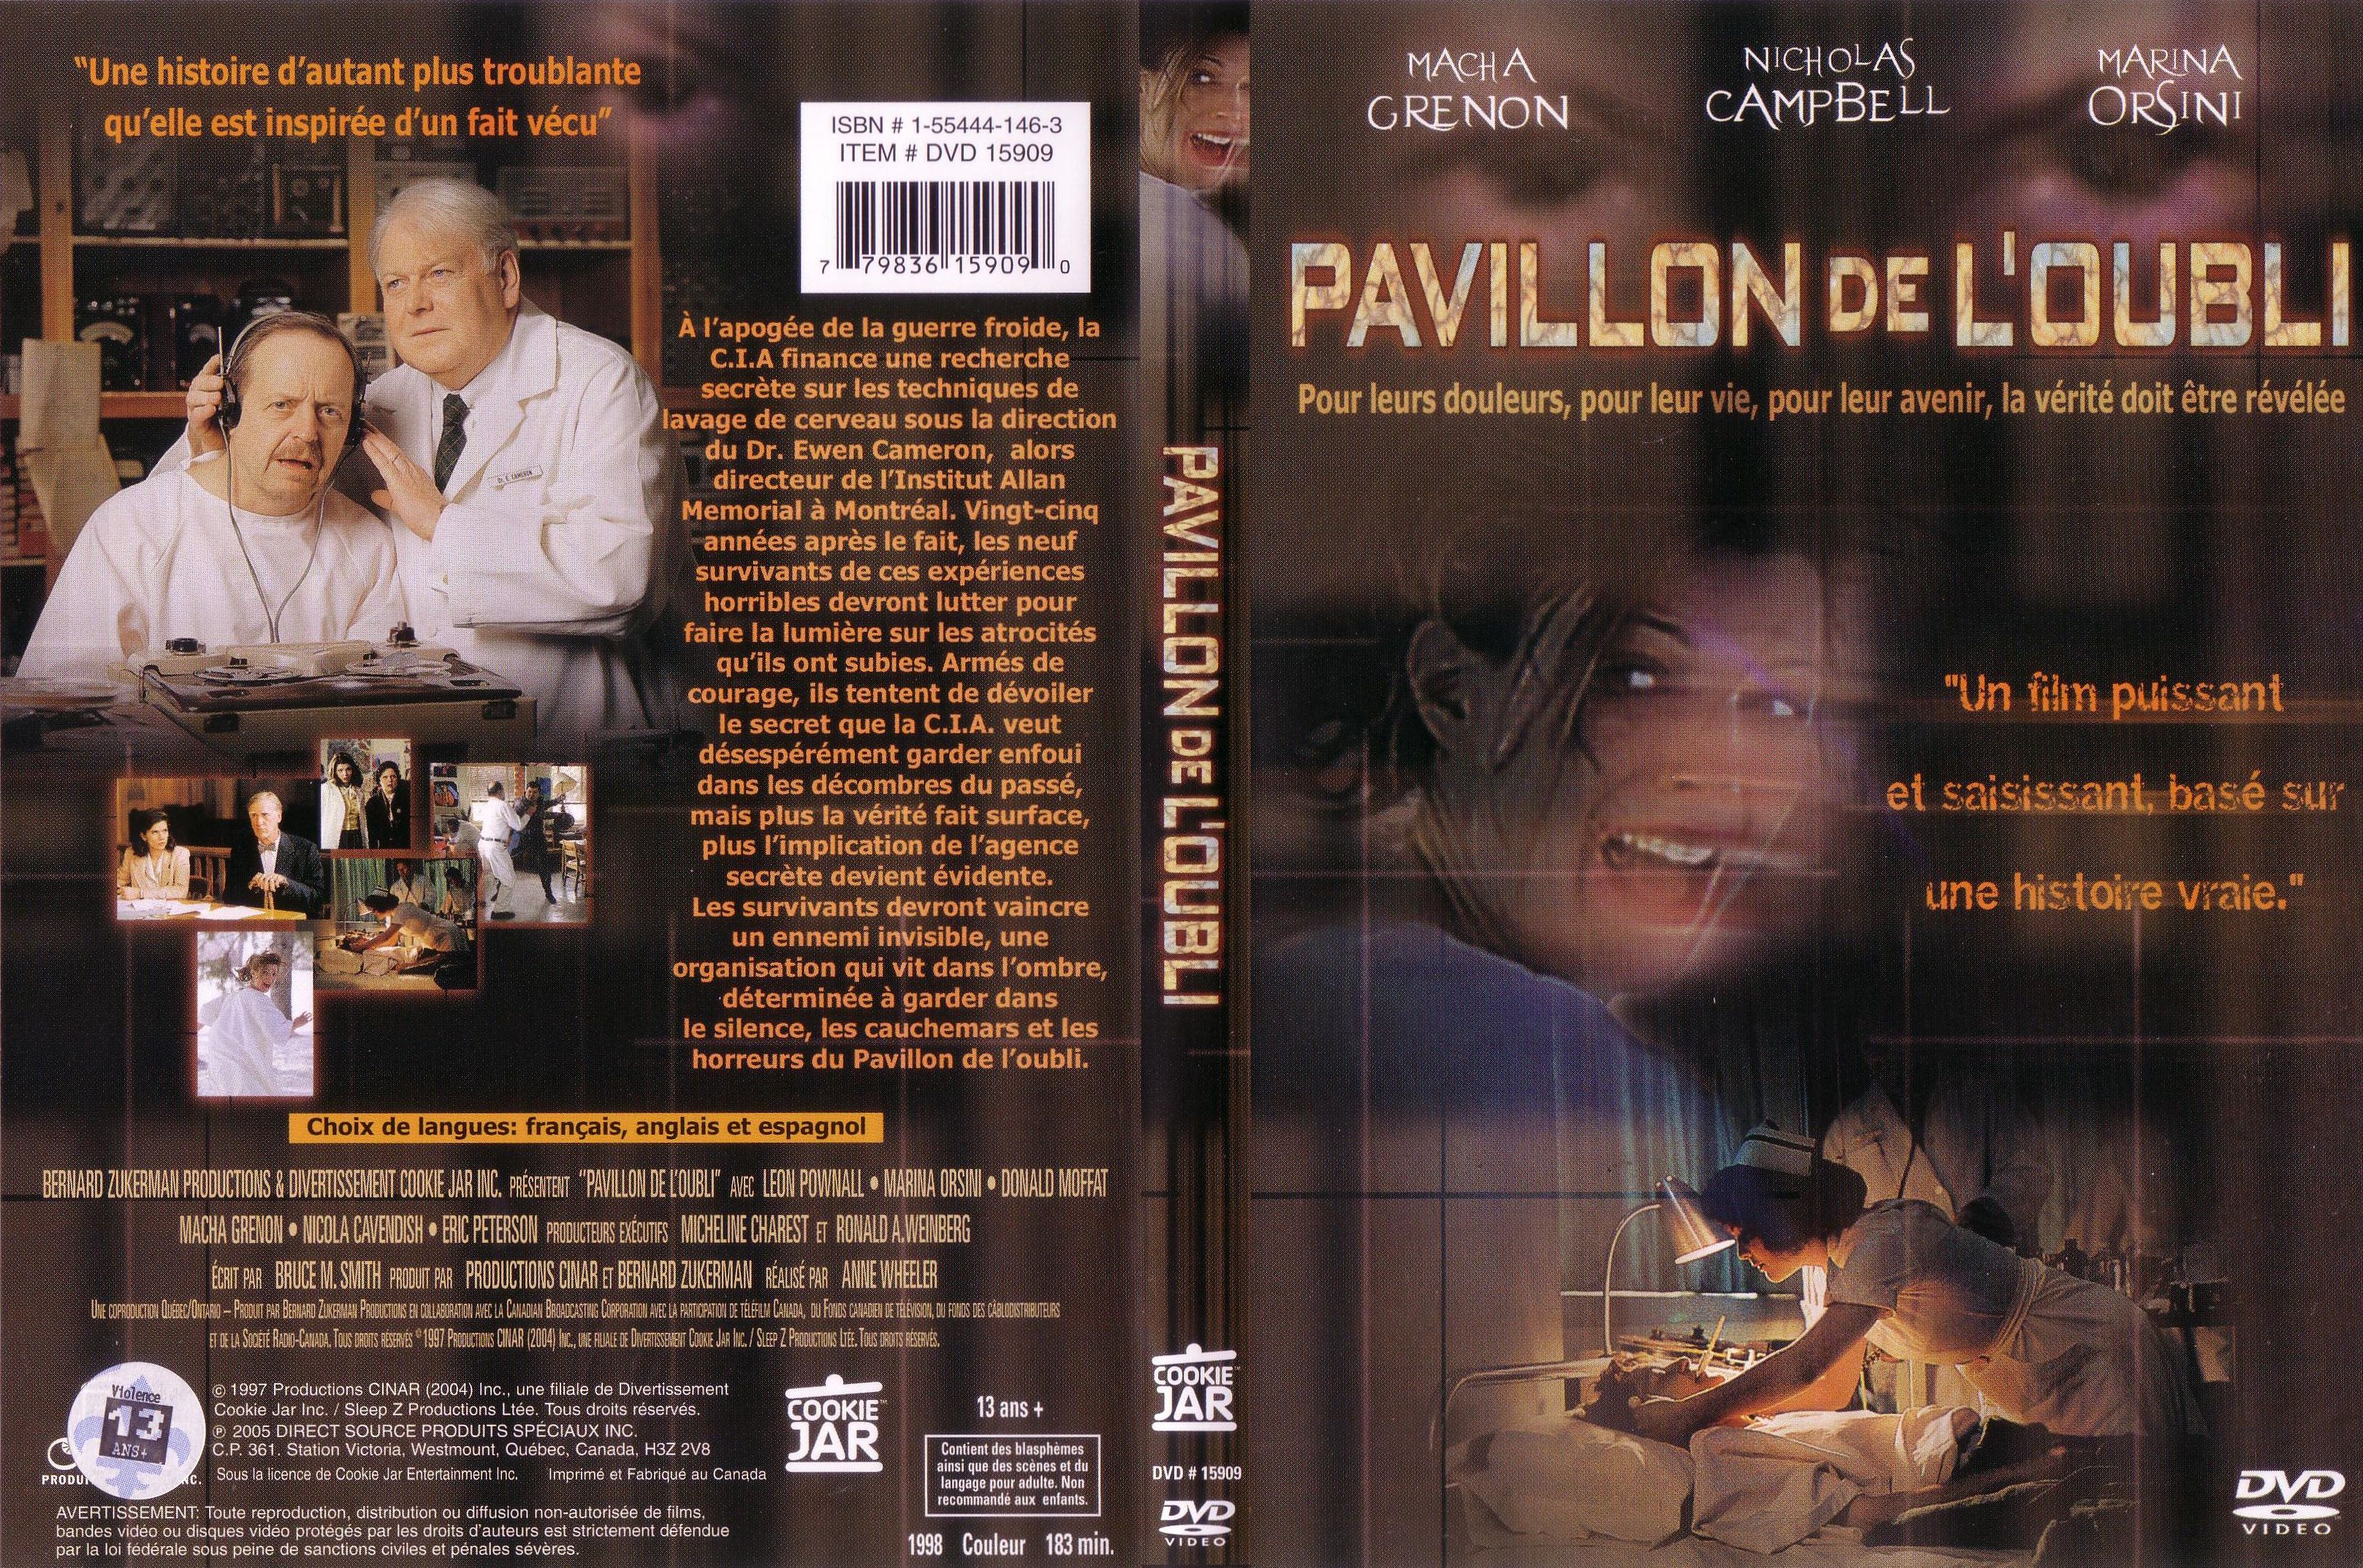 Jaquette DVD Pavillon de l